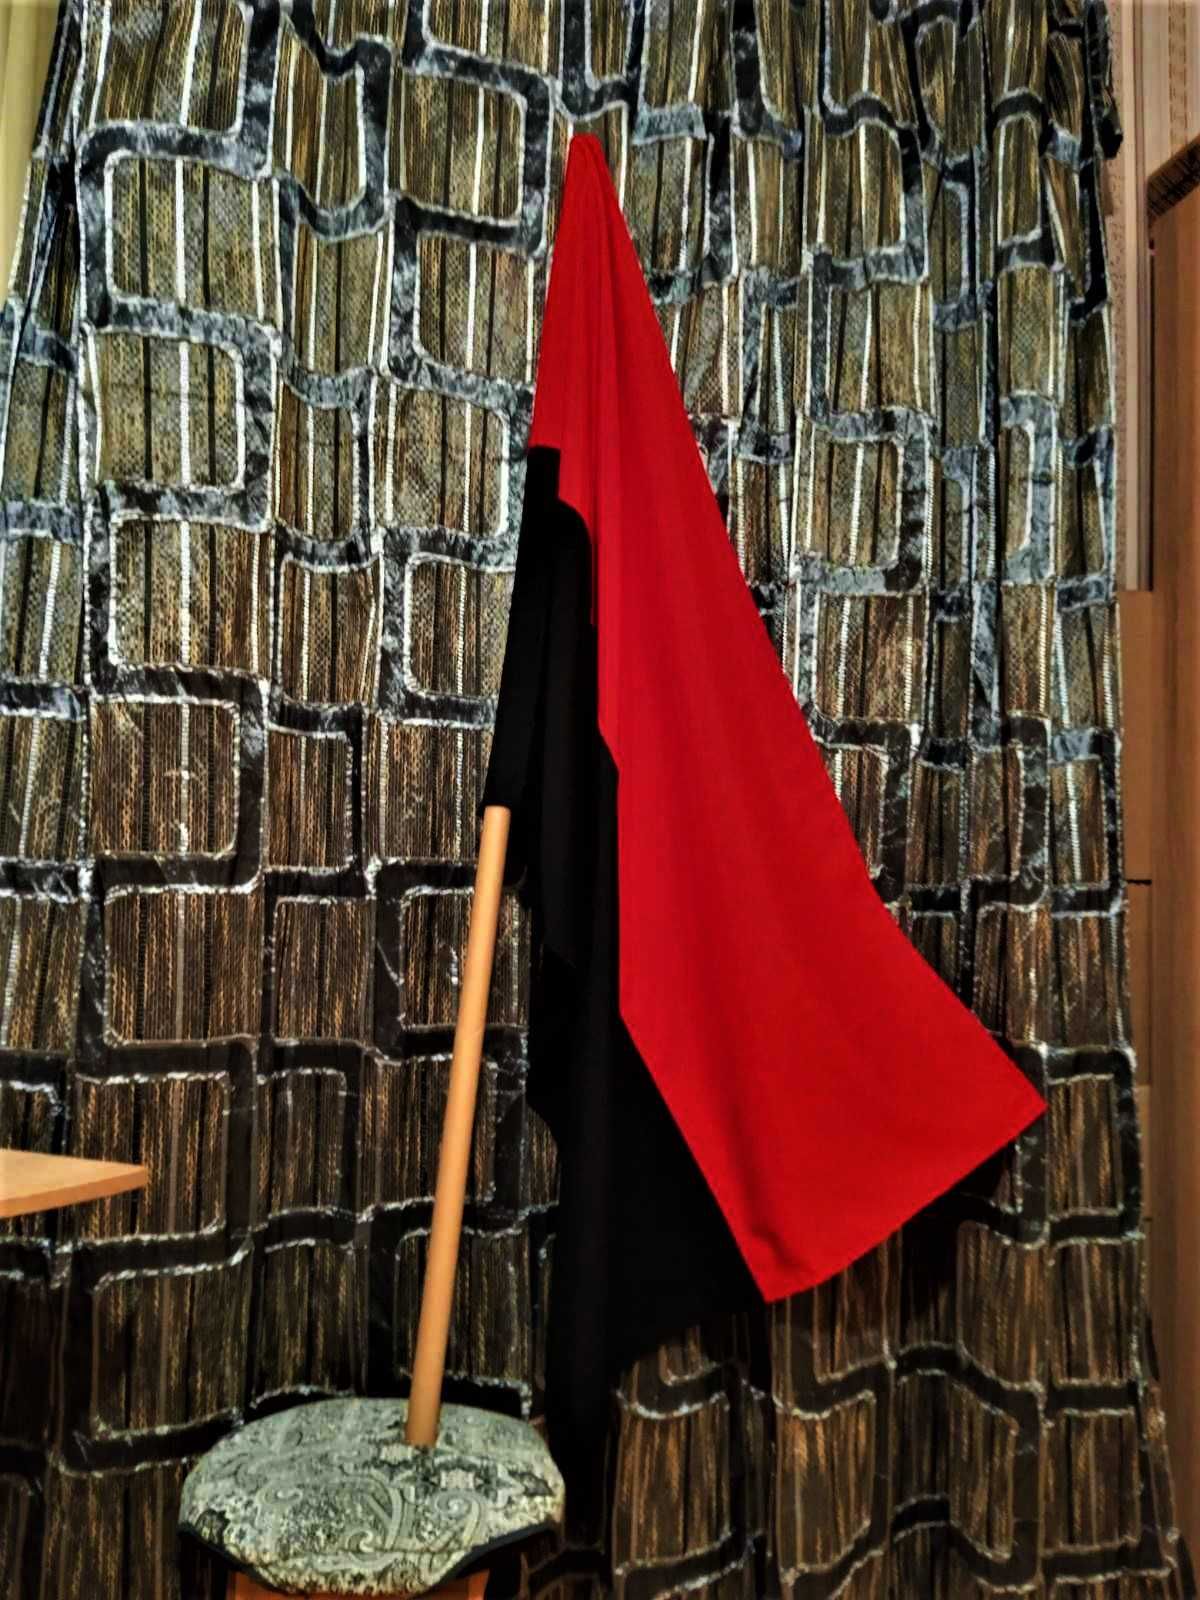 Габардиновий стяг, прапор, 60*90 см і ще три розміри,  3 кольори